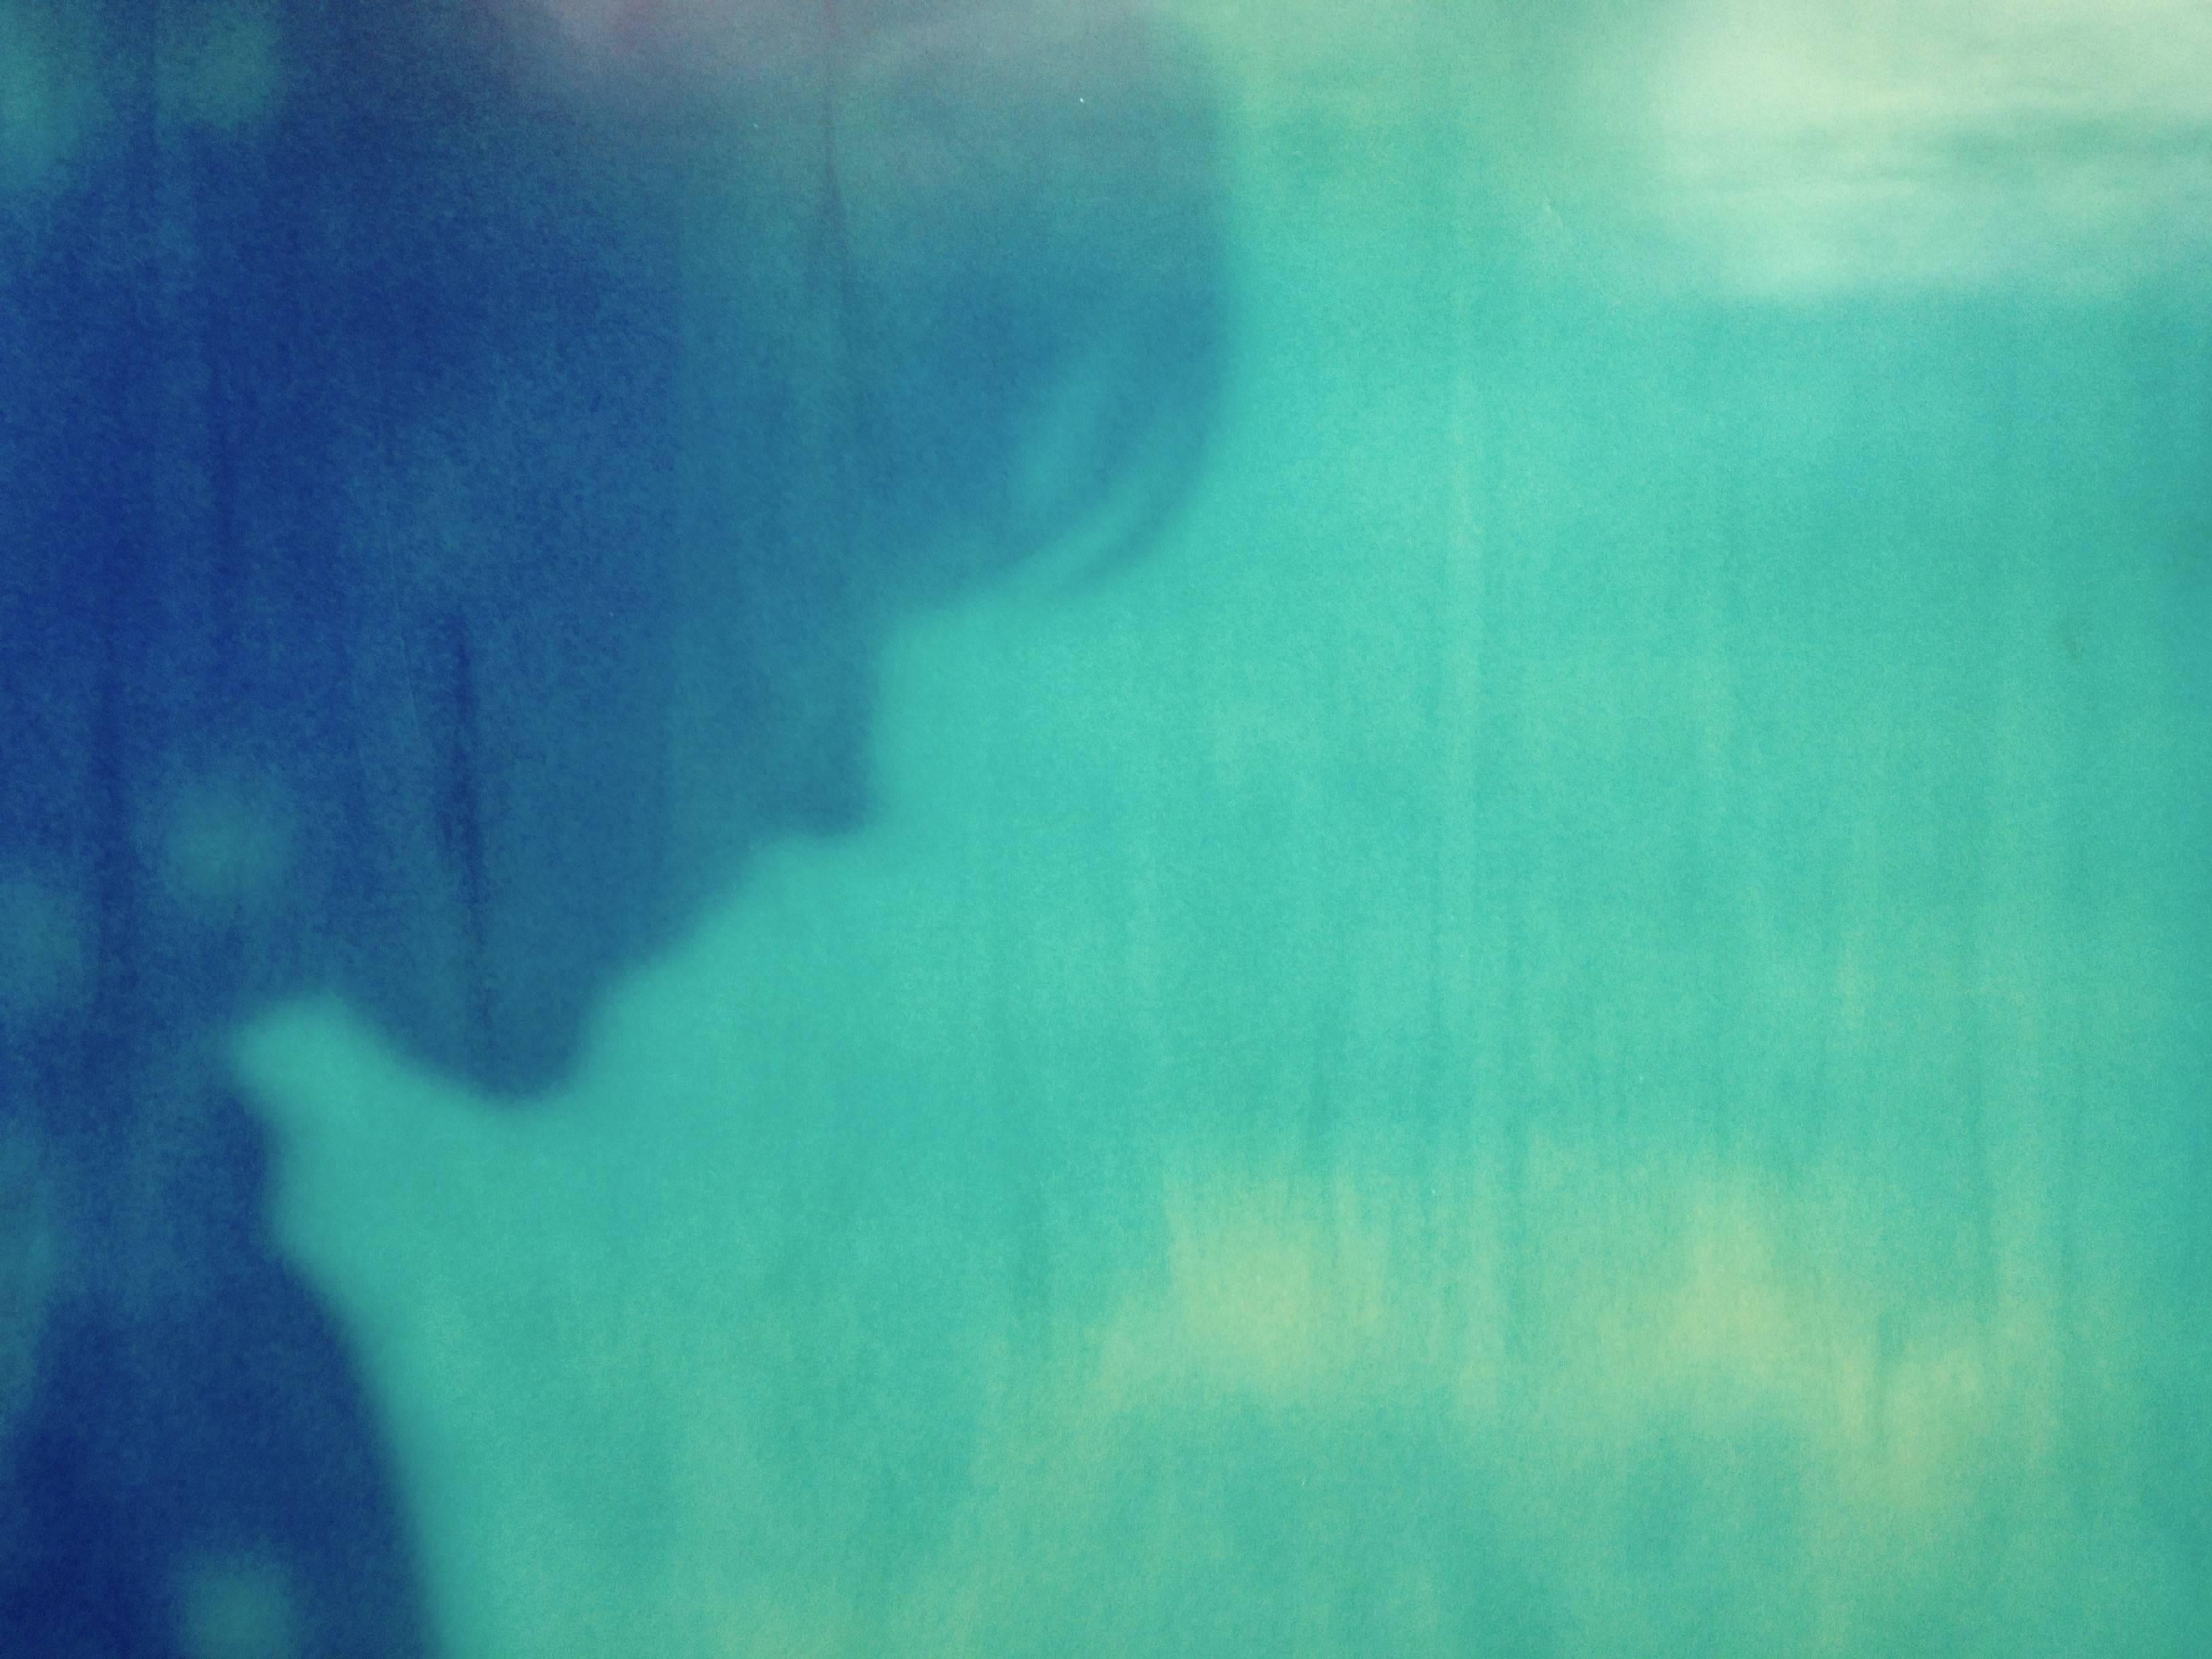 Jelly Fish – Zeitgenössisch, abgelaufen, Polaroid, Fotografie, Abstrakt, Ryan Gosling (Abstrakter Expressionismus), Photograph, von Stefanie Schneider